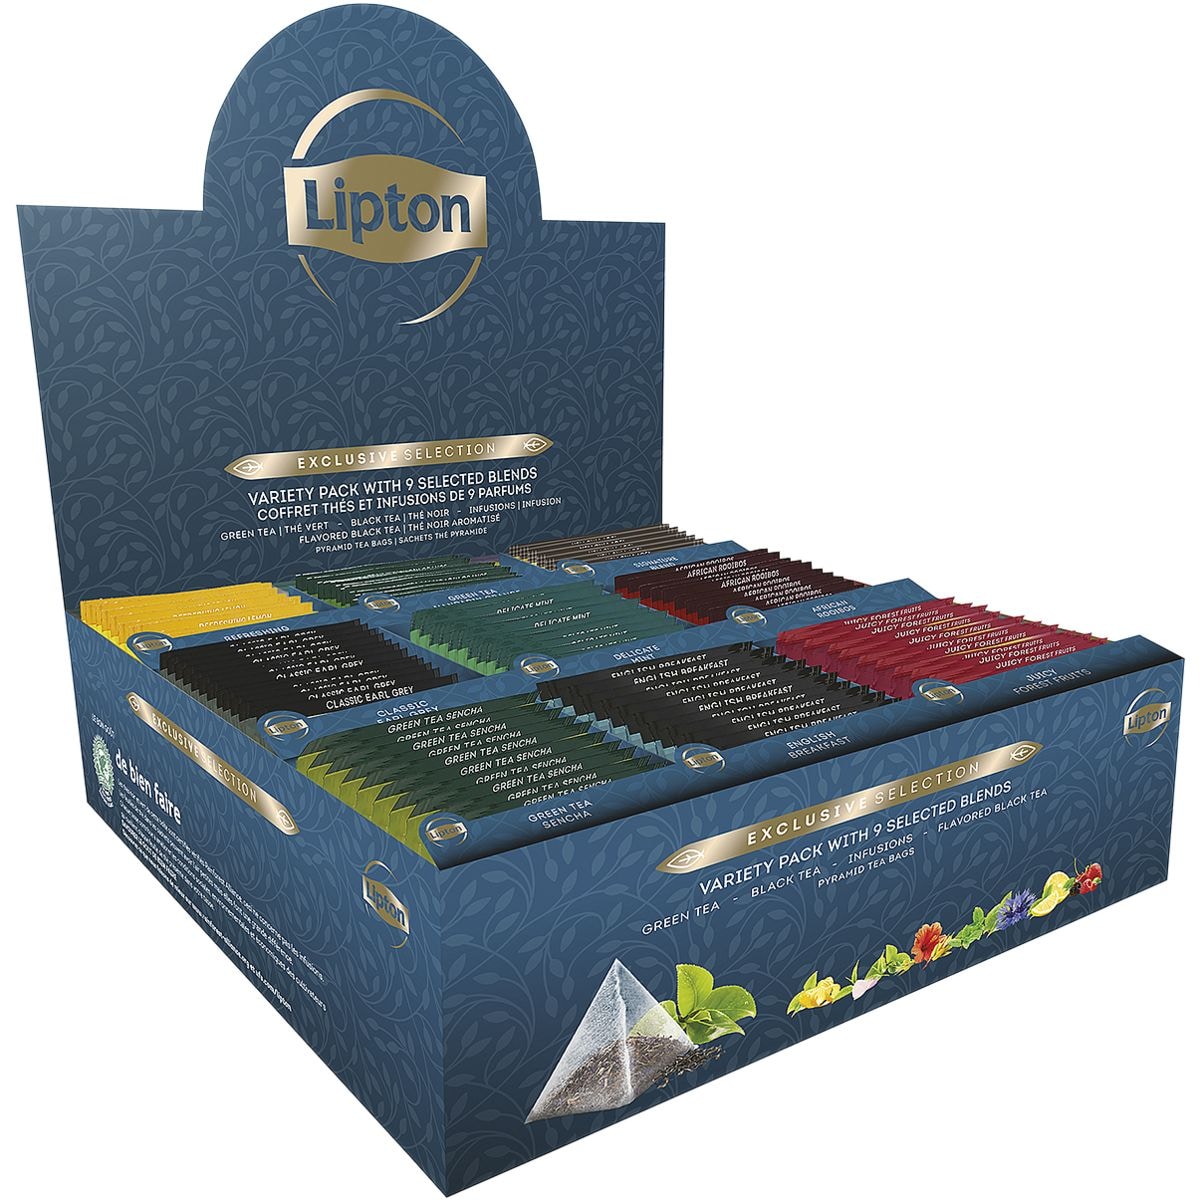 Lipton Theedoos Exclusive Selection 9 variteiten kopjesportie, 108 stuks